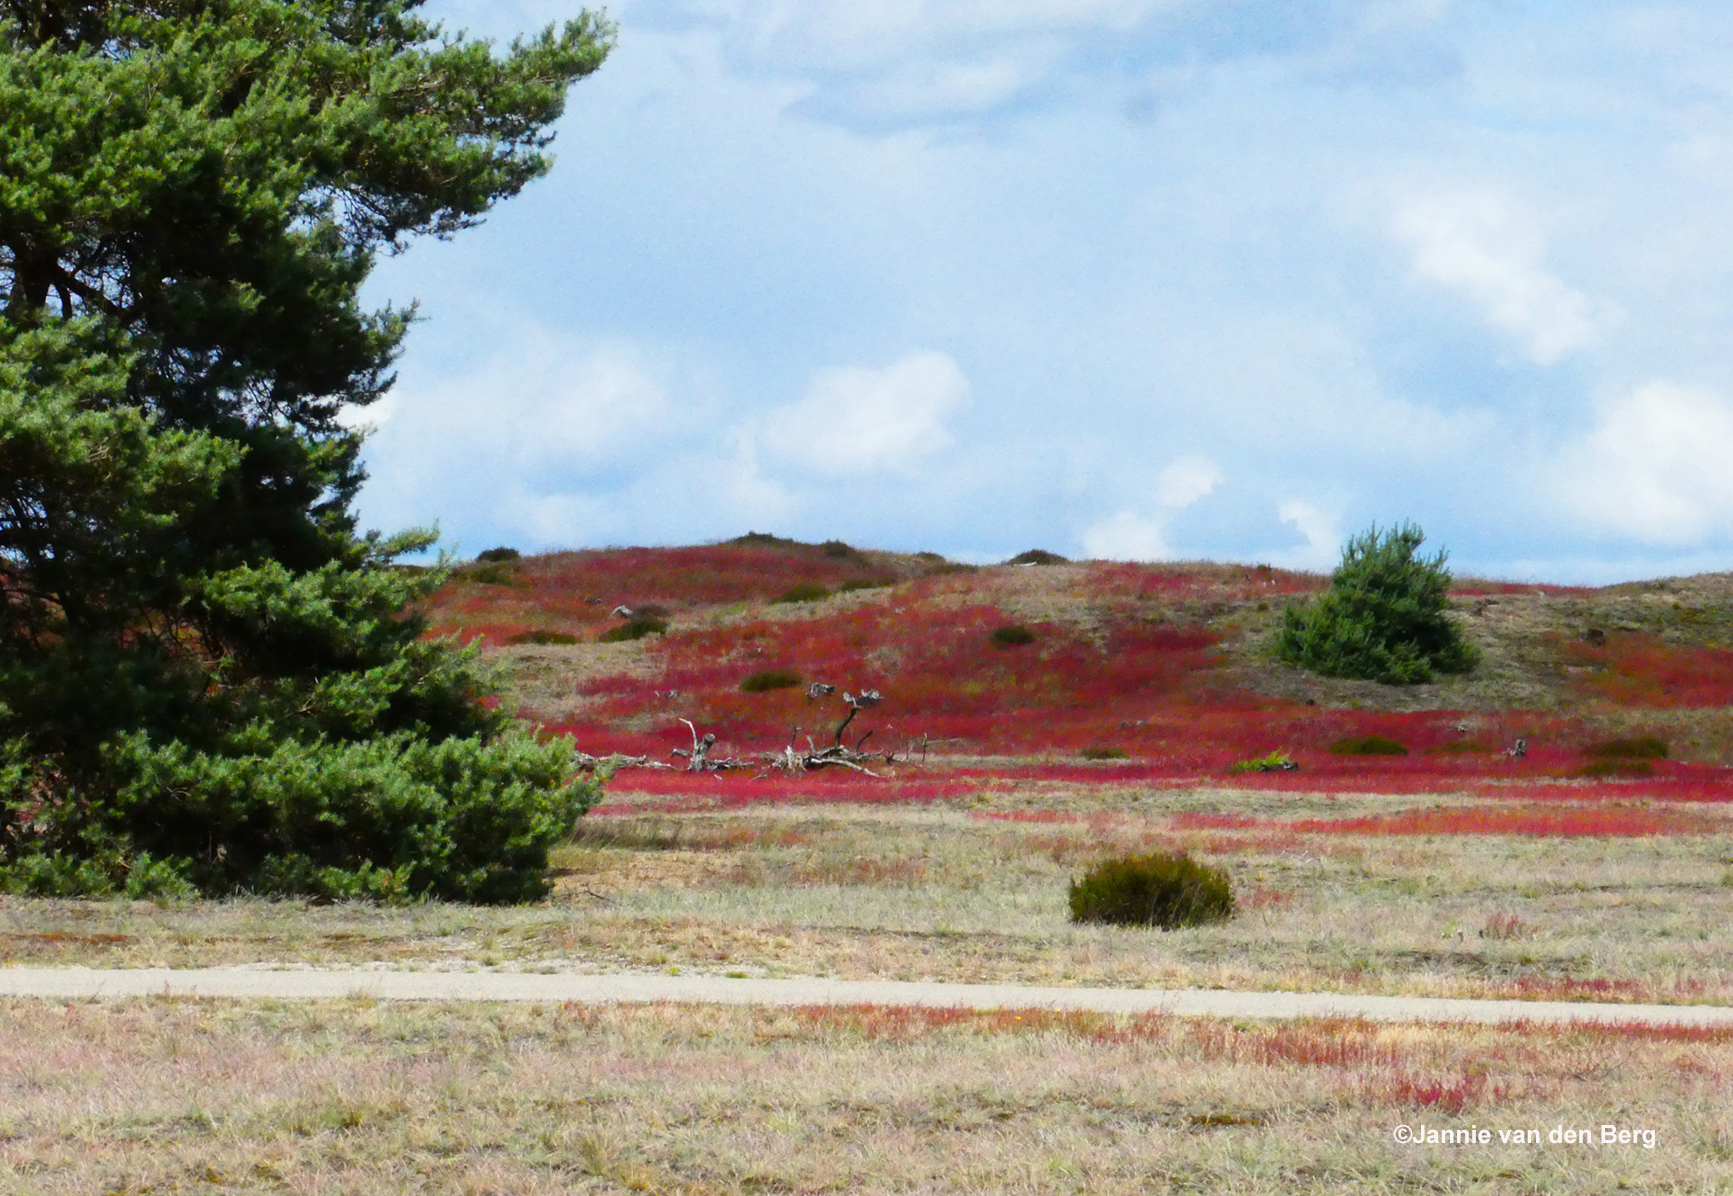 Blauwwitte wolkenluchten, groene dennen en een rood tapijt van schapenzuring - Foto: ©Jannie van den Berg